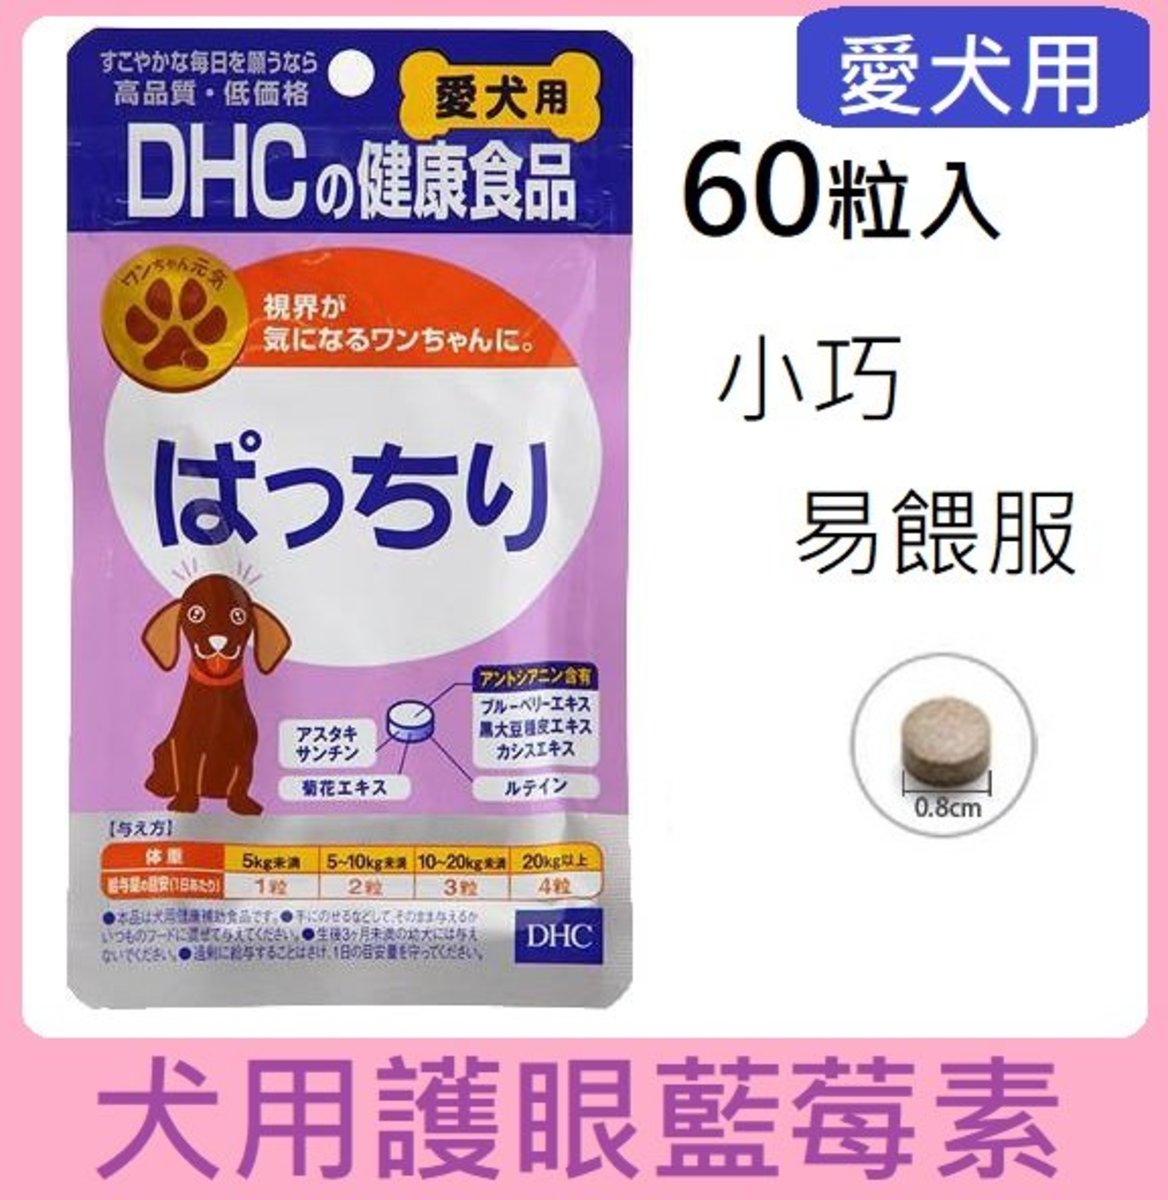 DHC | 犬用護眼藍莓素60粒/寵物藥妝| HKTVmall 香港最大網購平台